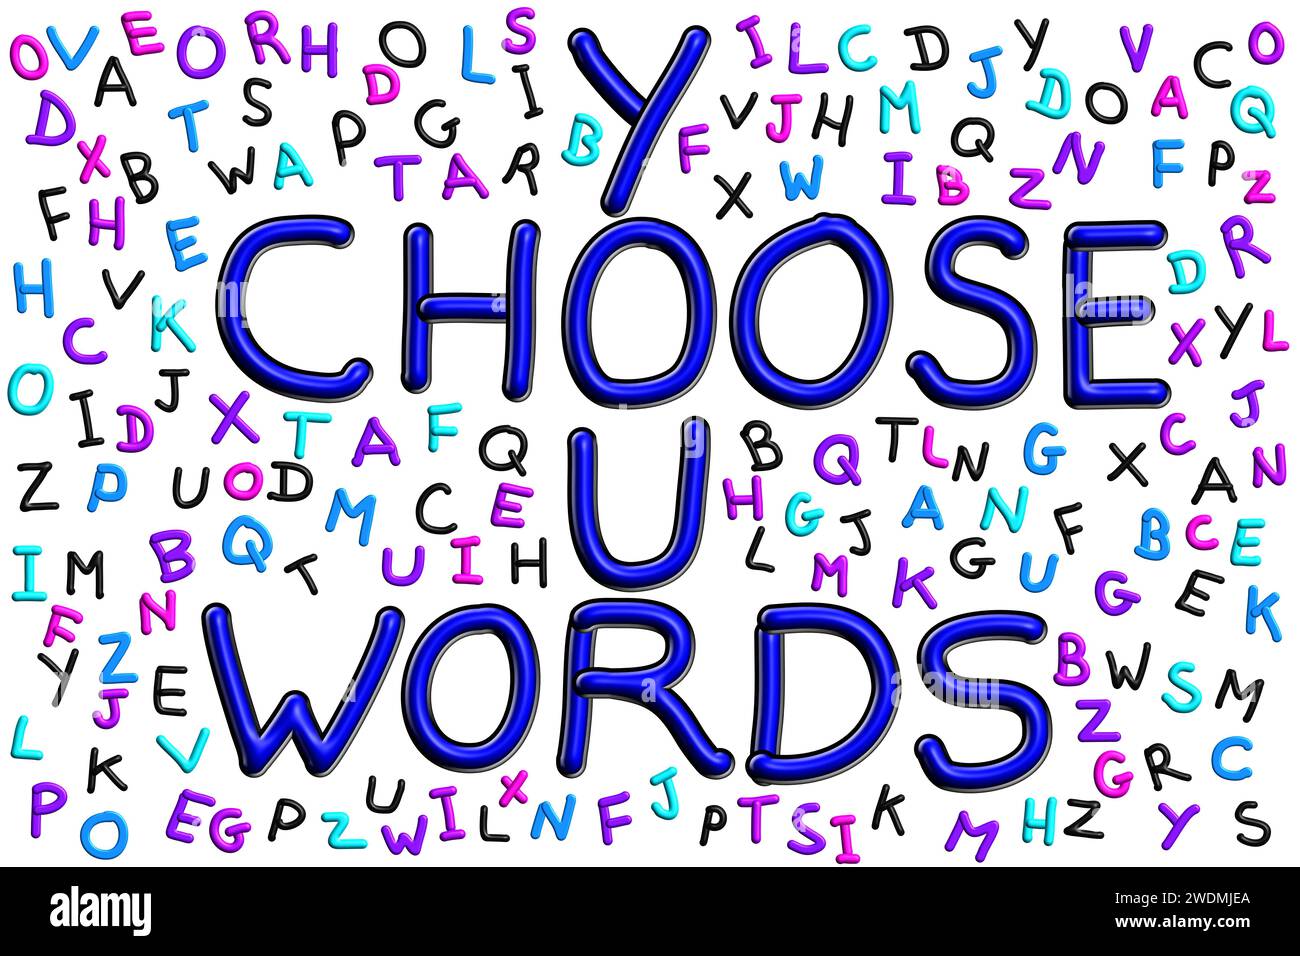 Choisissez vos mots, phrase dans le lettrage avait dessiné entouré de lettres alphabétiques colorées aléatoires isolées sur le fond Banque D'Images